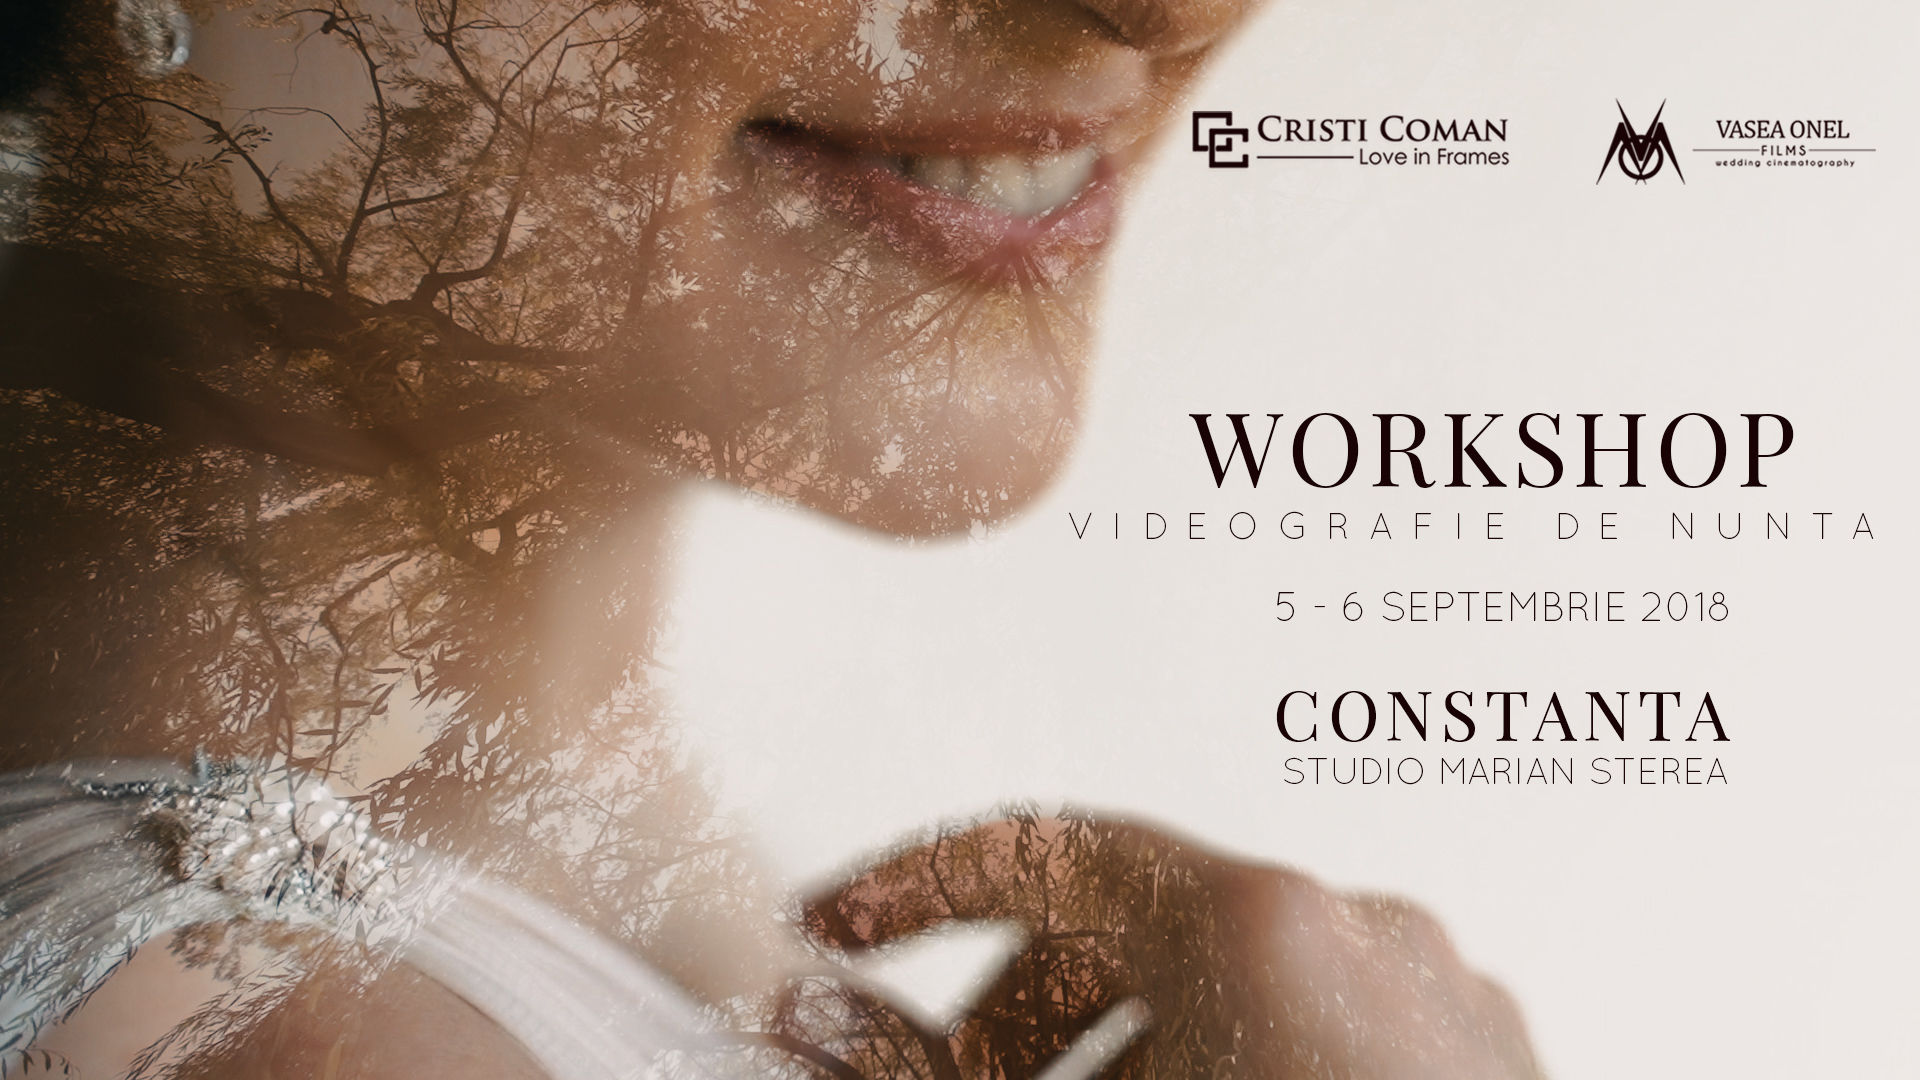 WORKSHOP VIDEOGRAFIE DE NUNTA - CONSTANTA | Vasea Onel & Cristi Coman